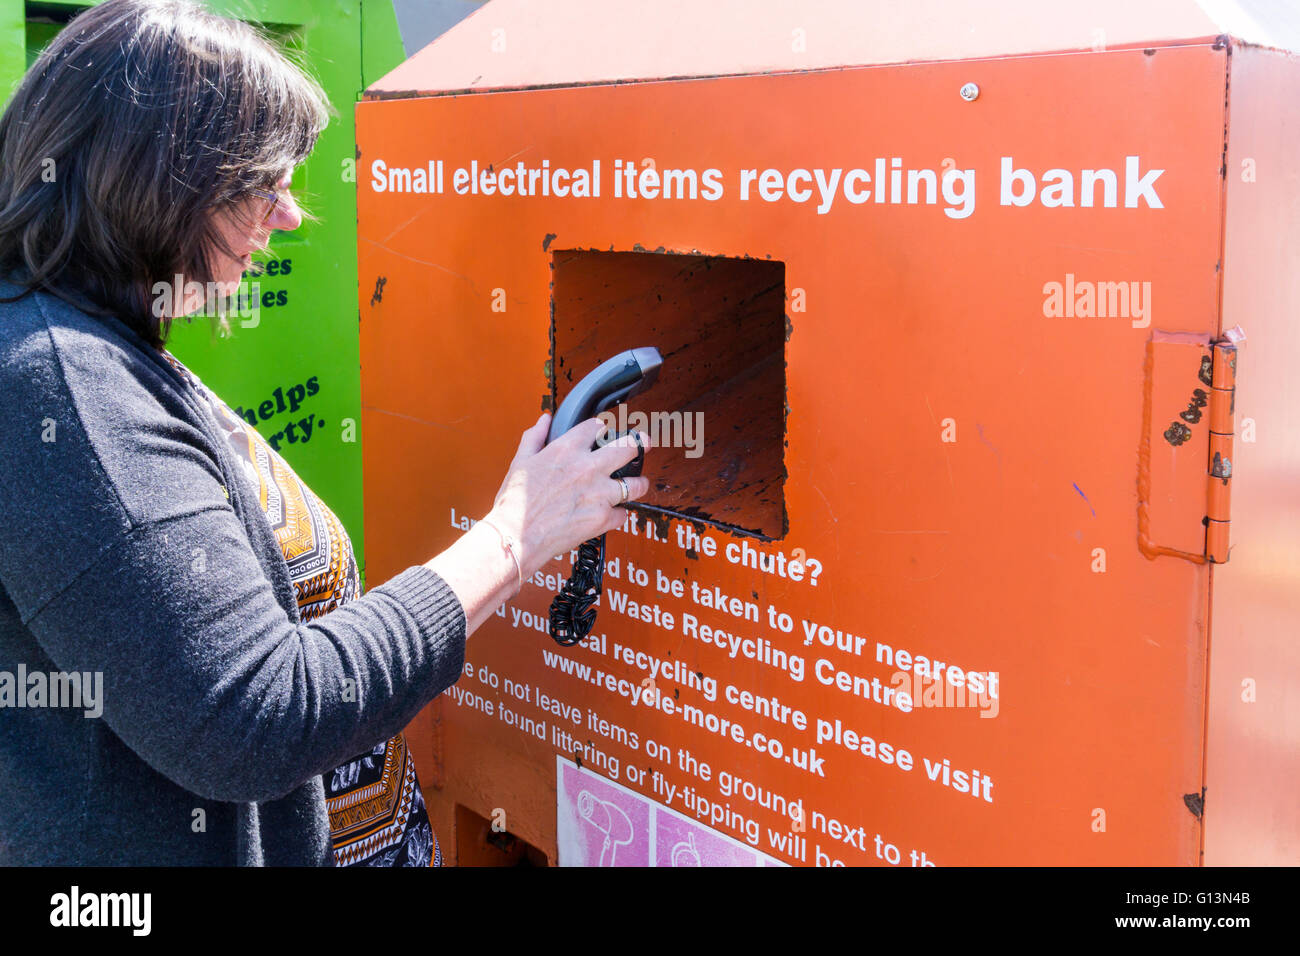 Eine Frau legt einen unerwünschten elektrischen Rasierapparat in eine kleine elektrische Geräte recycling Bank. Stockfoto